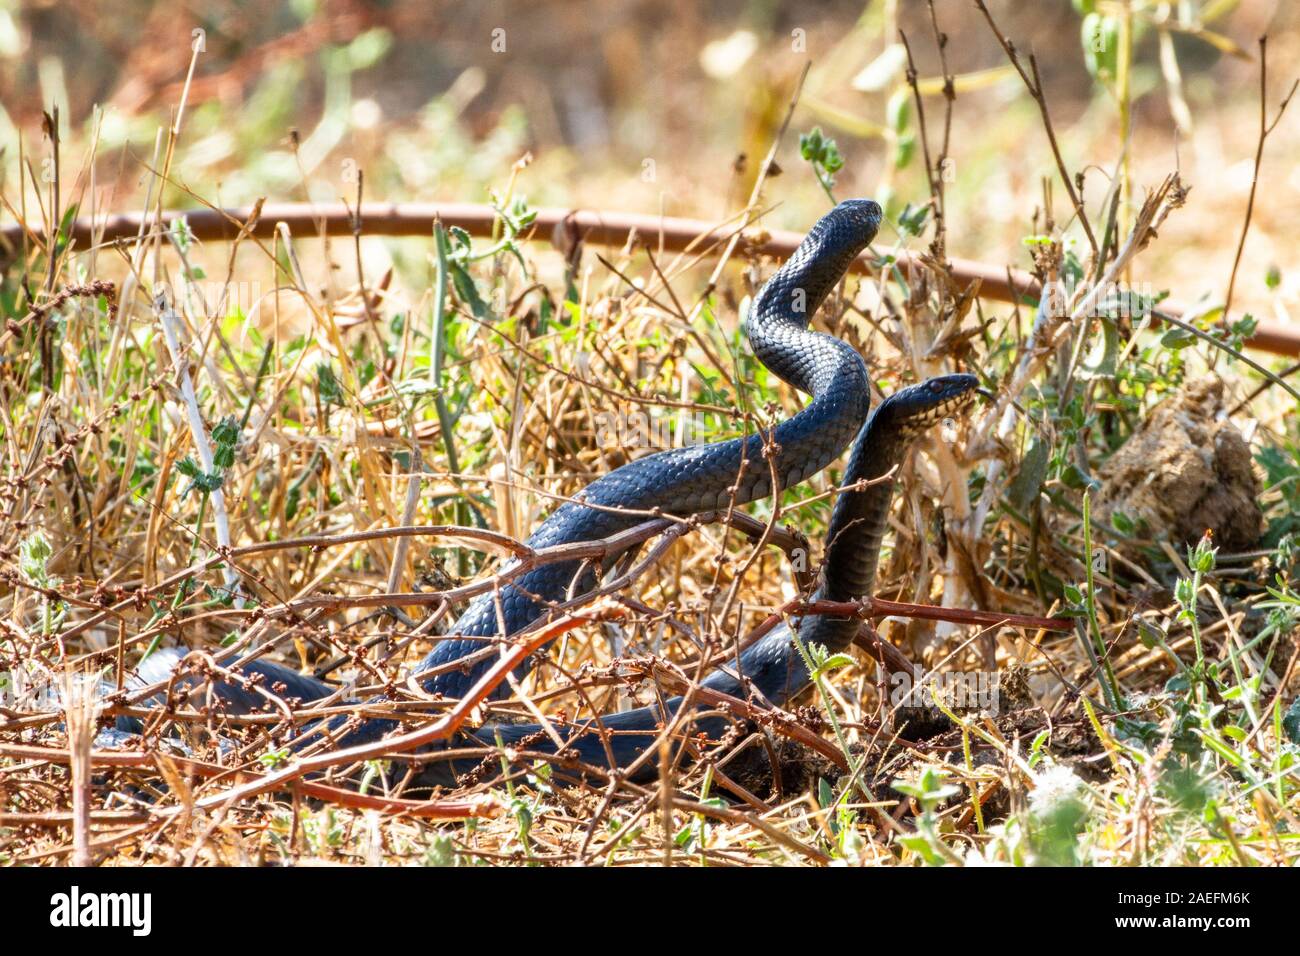 Dolichophis jugularis, le whipsnake noir, est une espèce de serpents de la famille des Colubridae. Sous-espèces Dolichophis jugularis asianus photographié en J Banque D'Images